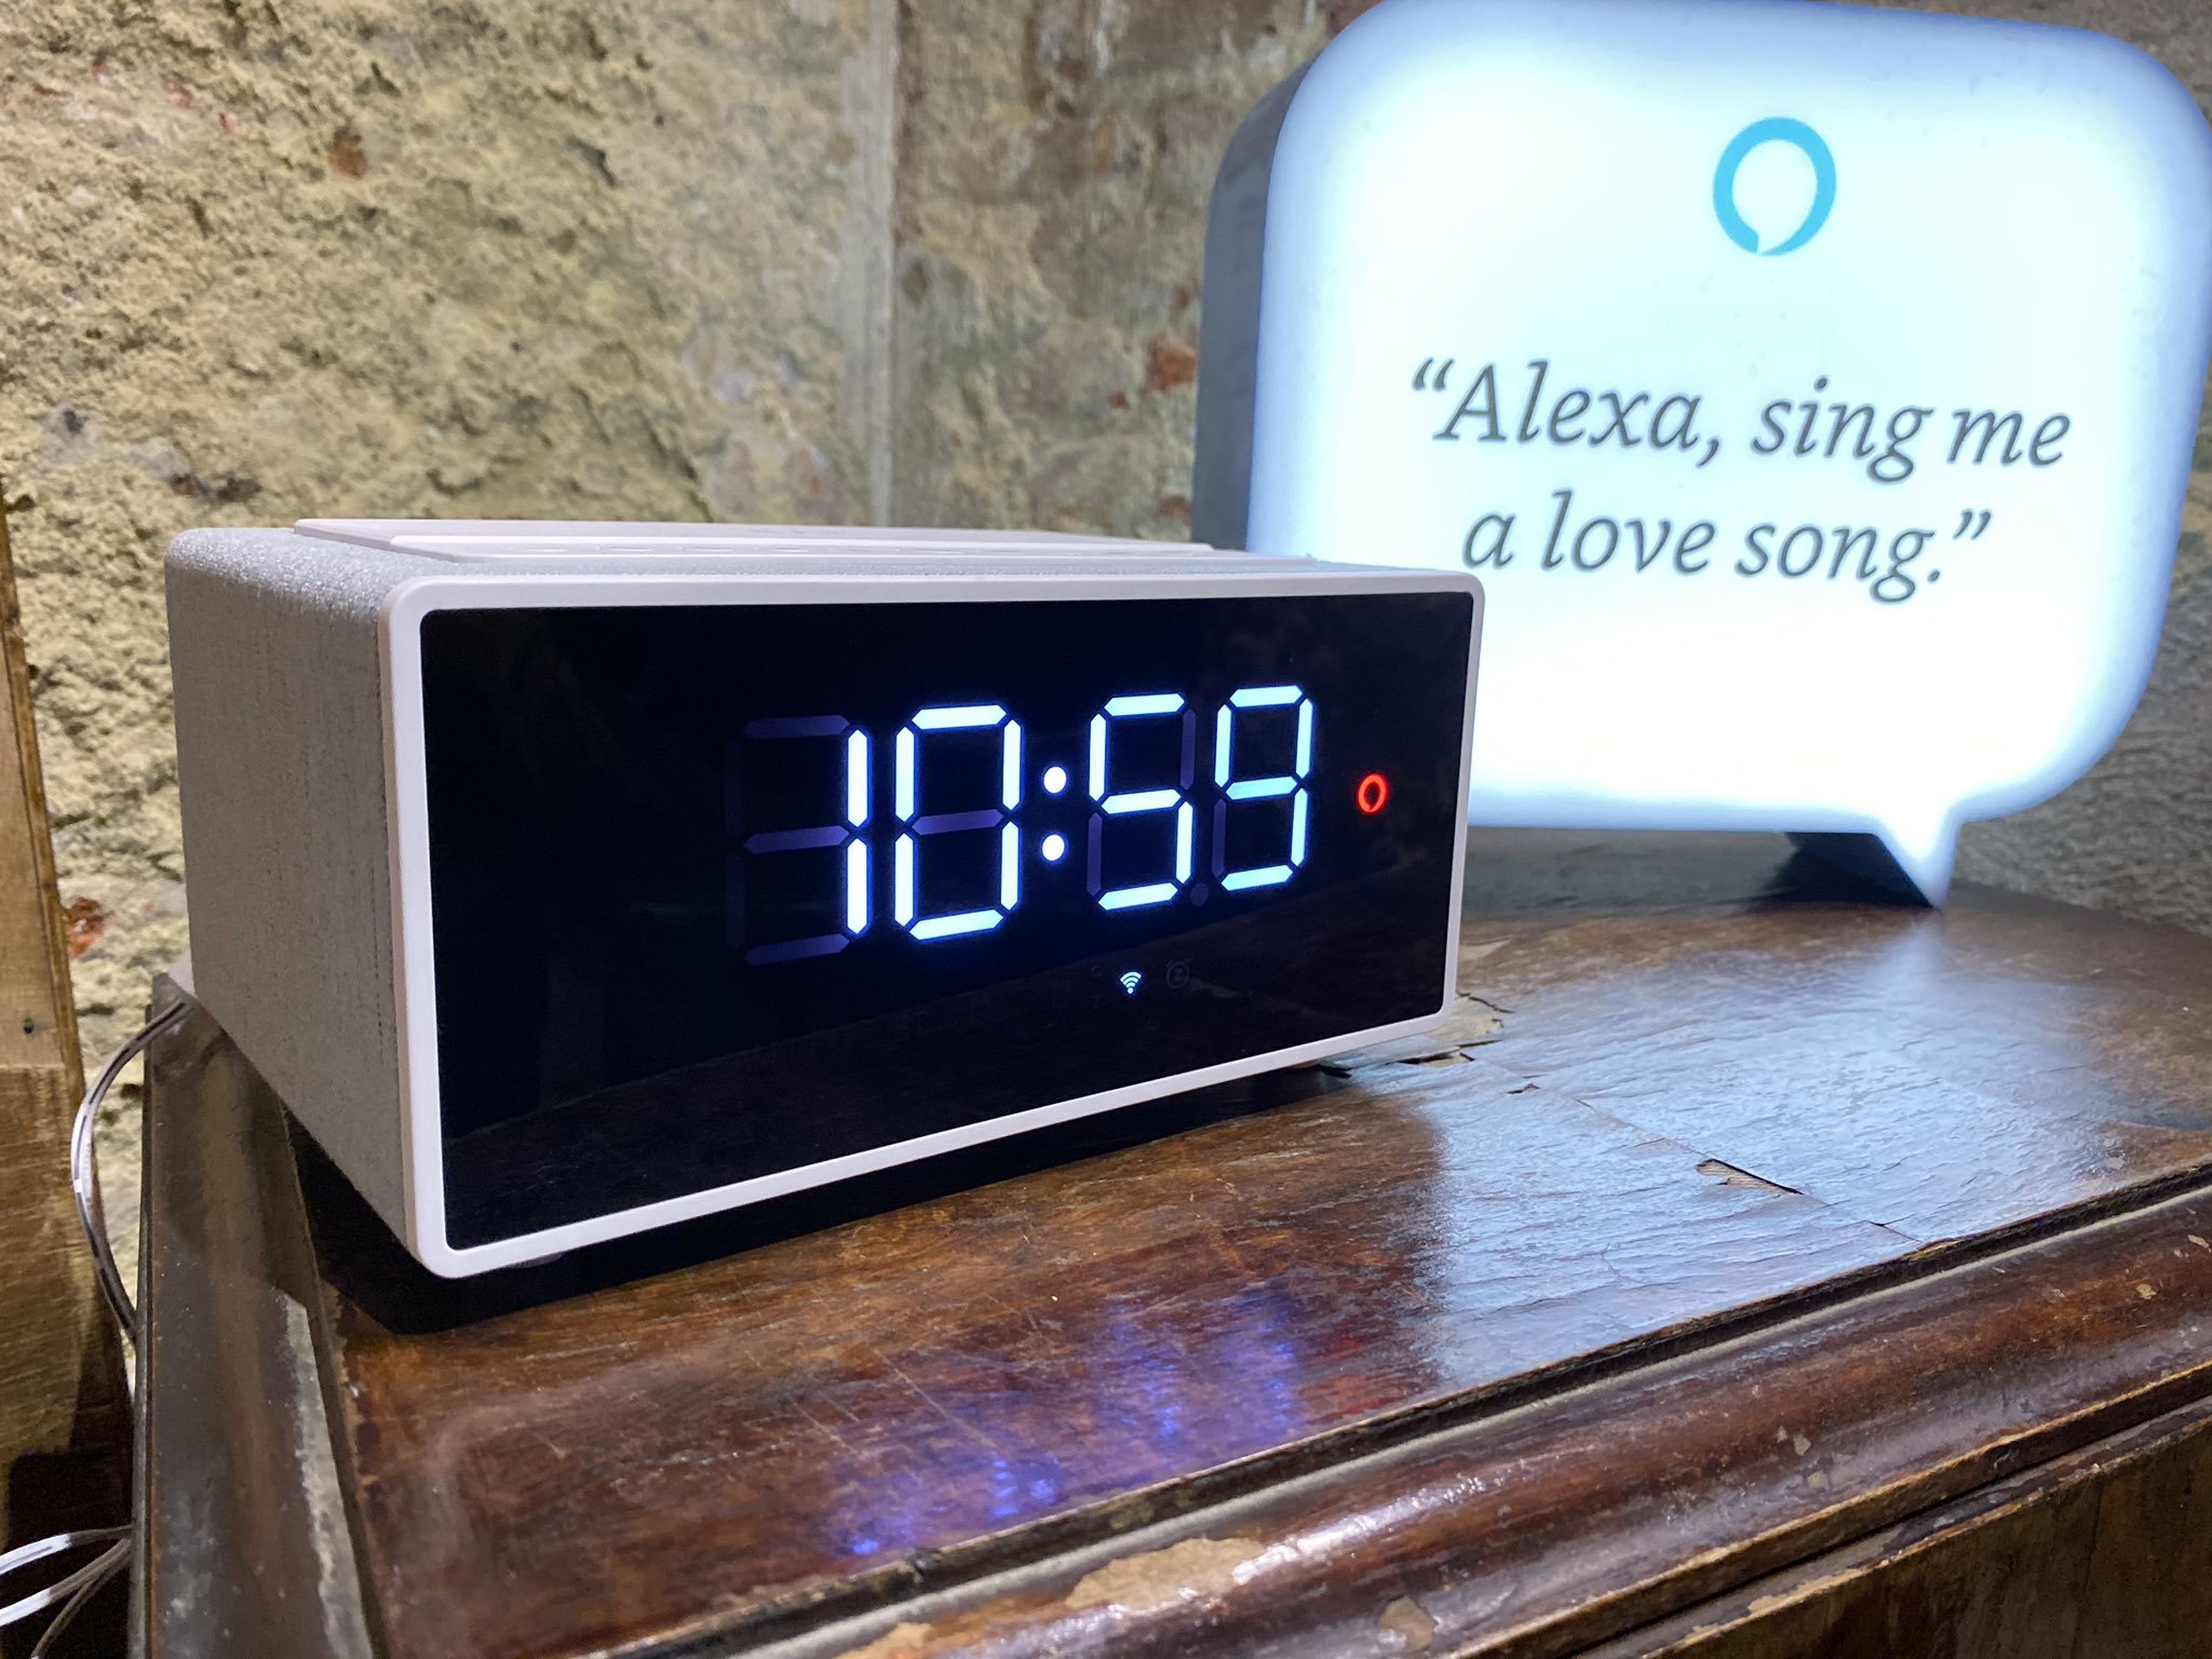 Energy Sistem lanza una radio-despertador con Alexa para que te dé